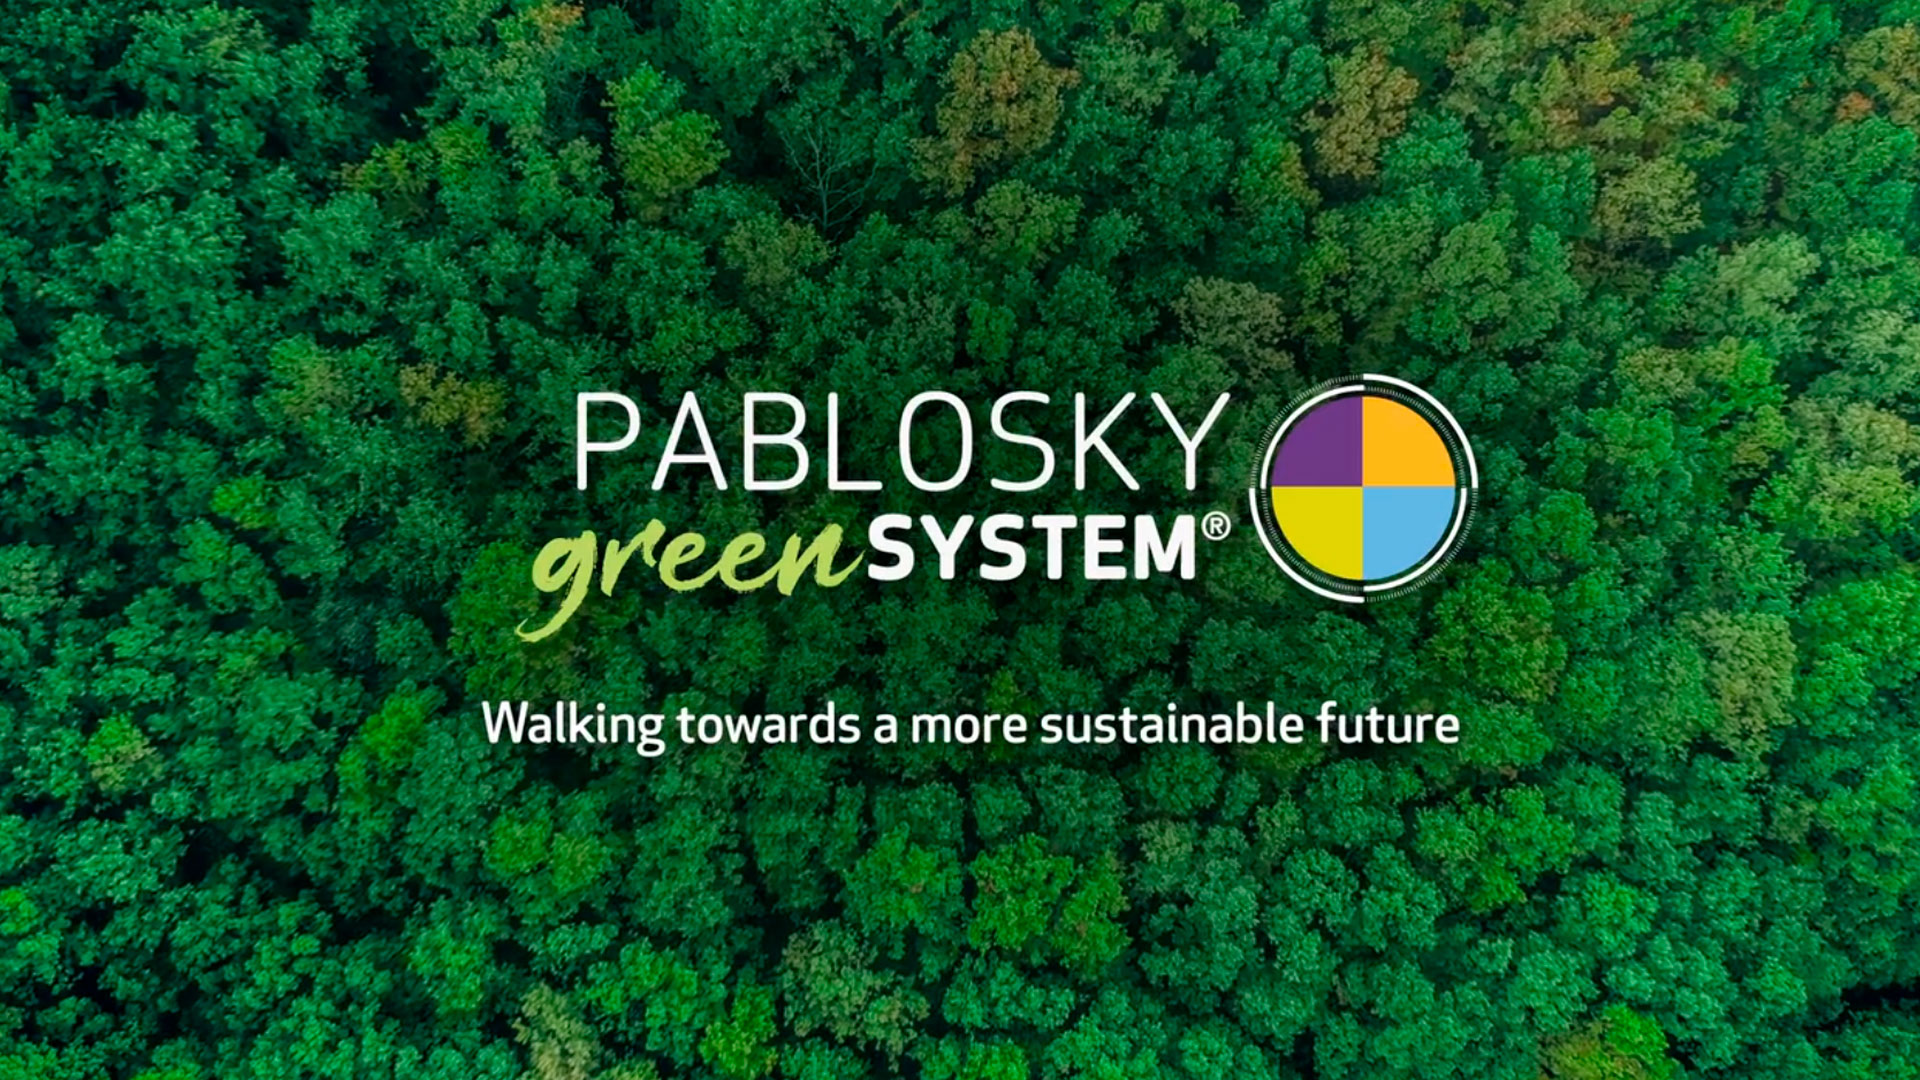 Pablosky Green System | Pablosky